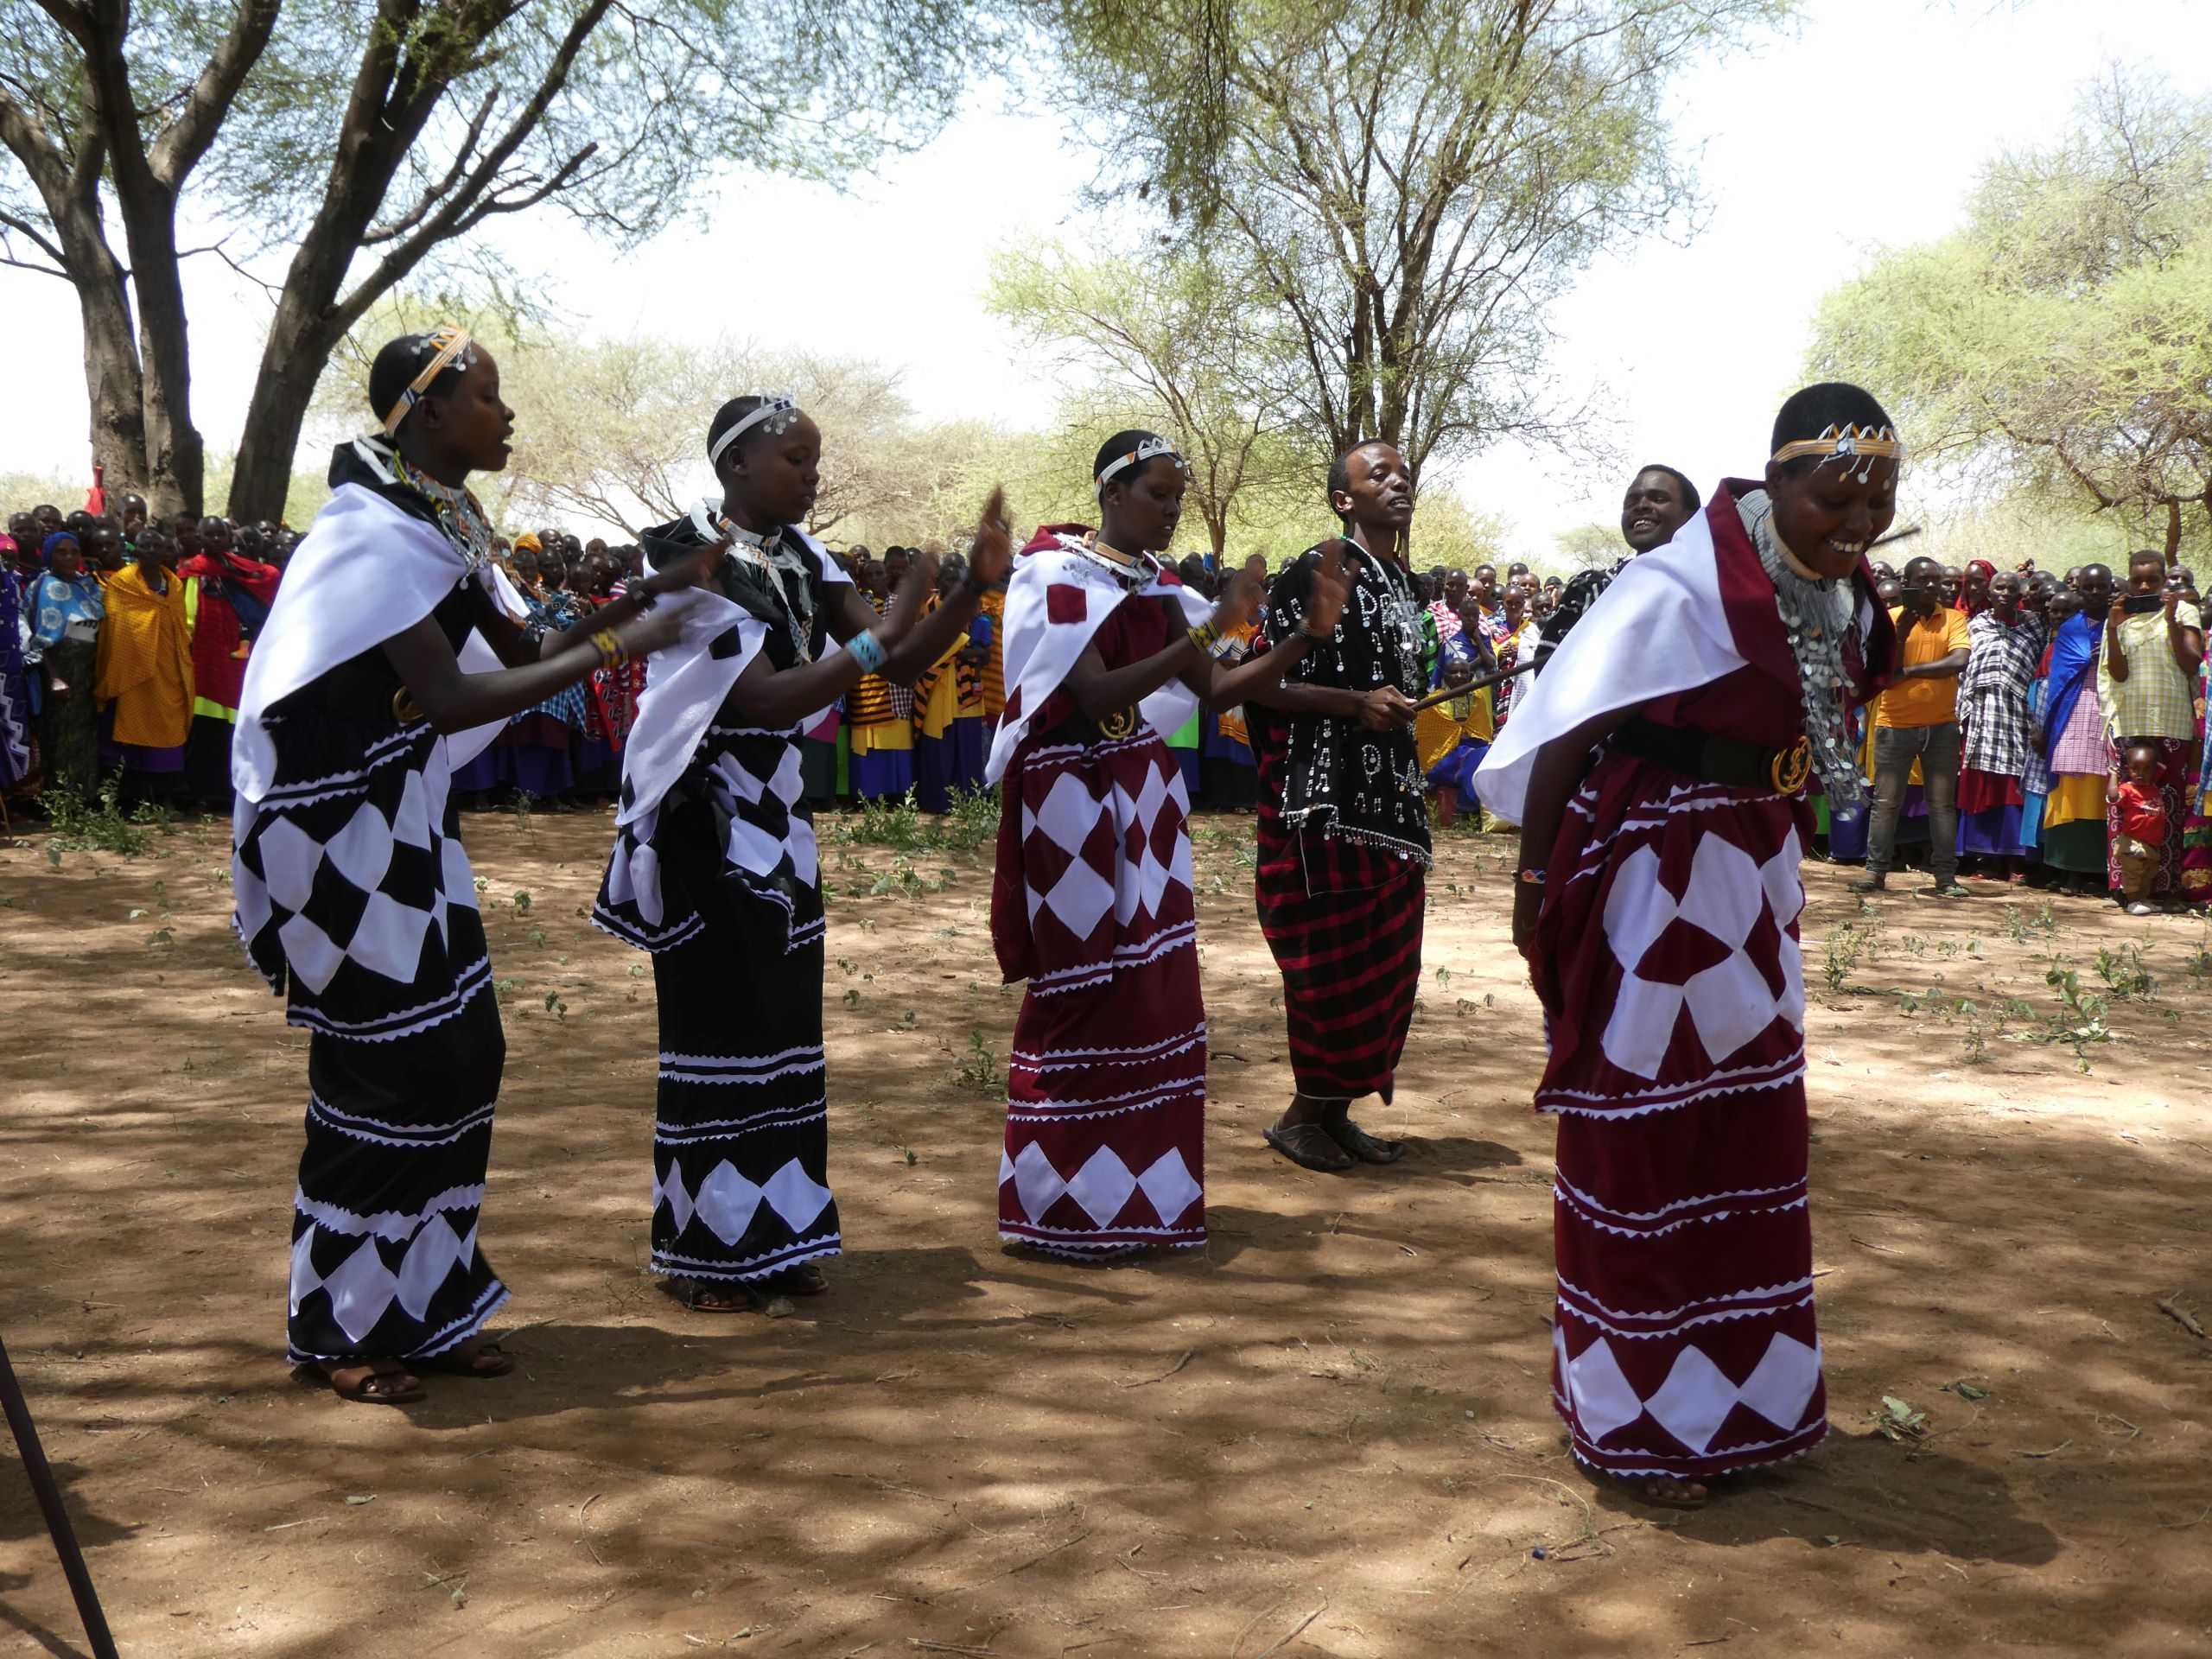 Personen in traditionellen afrikanischen Gewändern auf einem Platz umgeben von einer Zuschauermenge